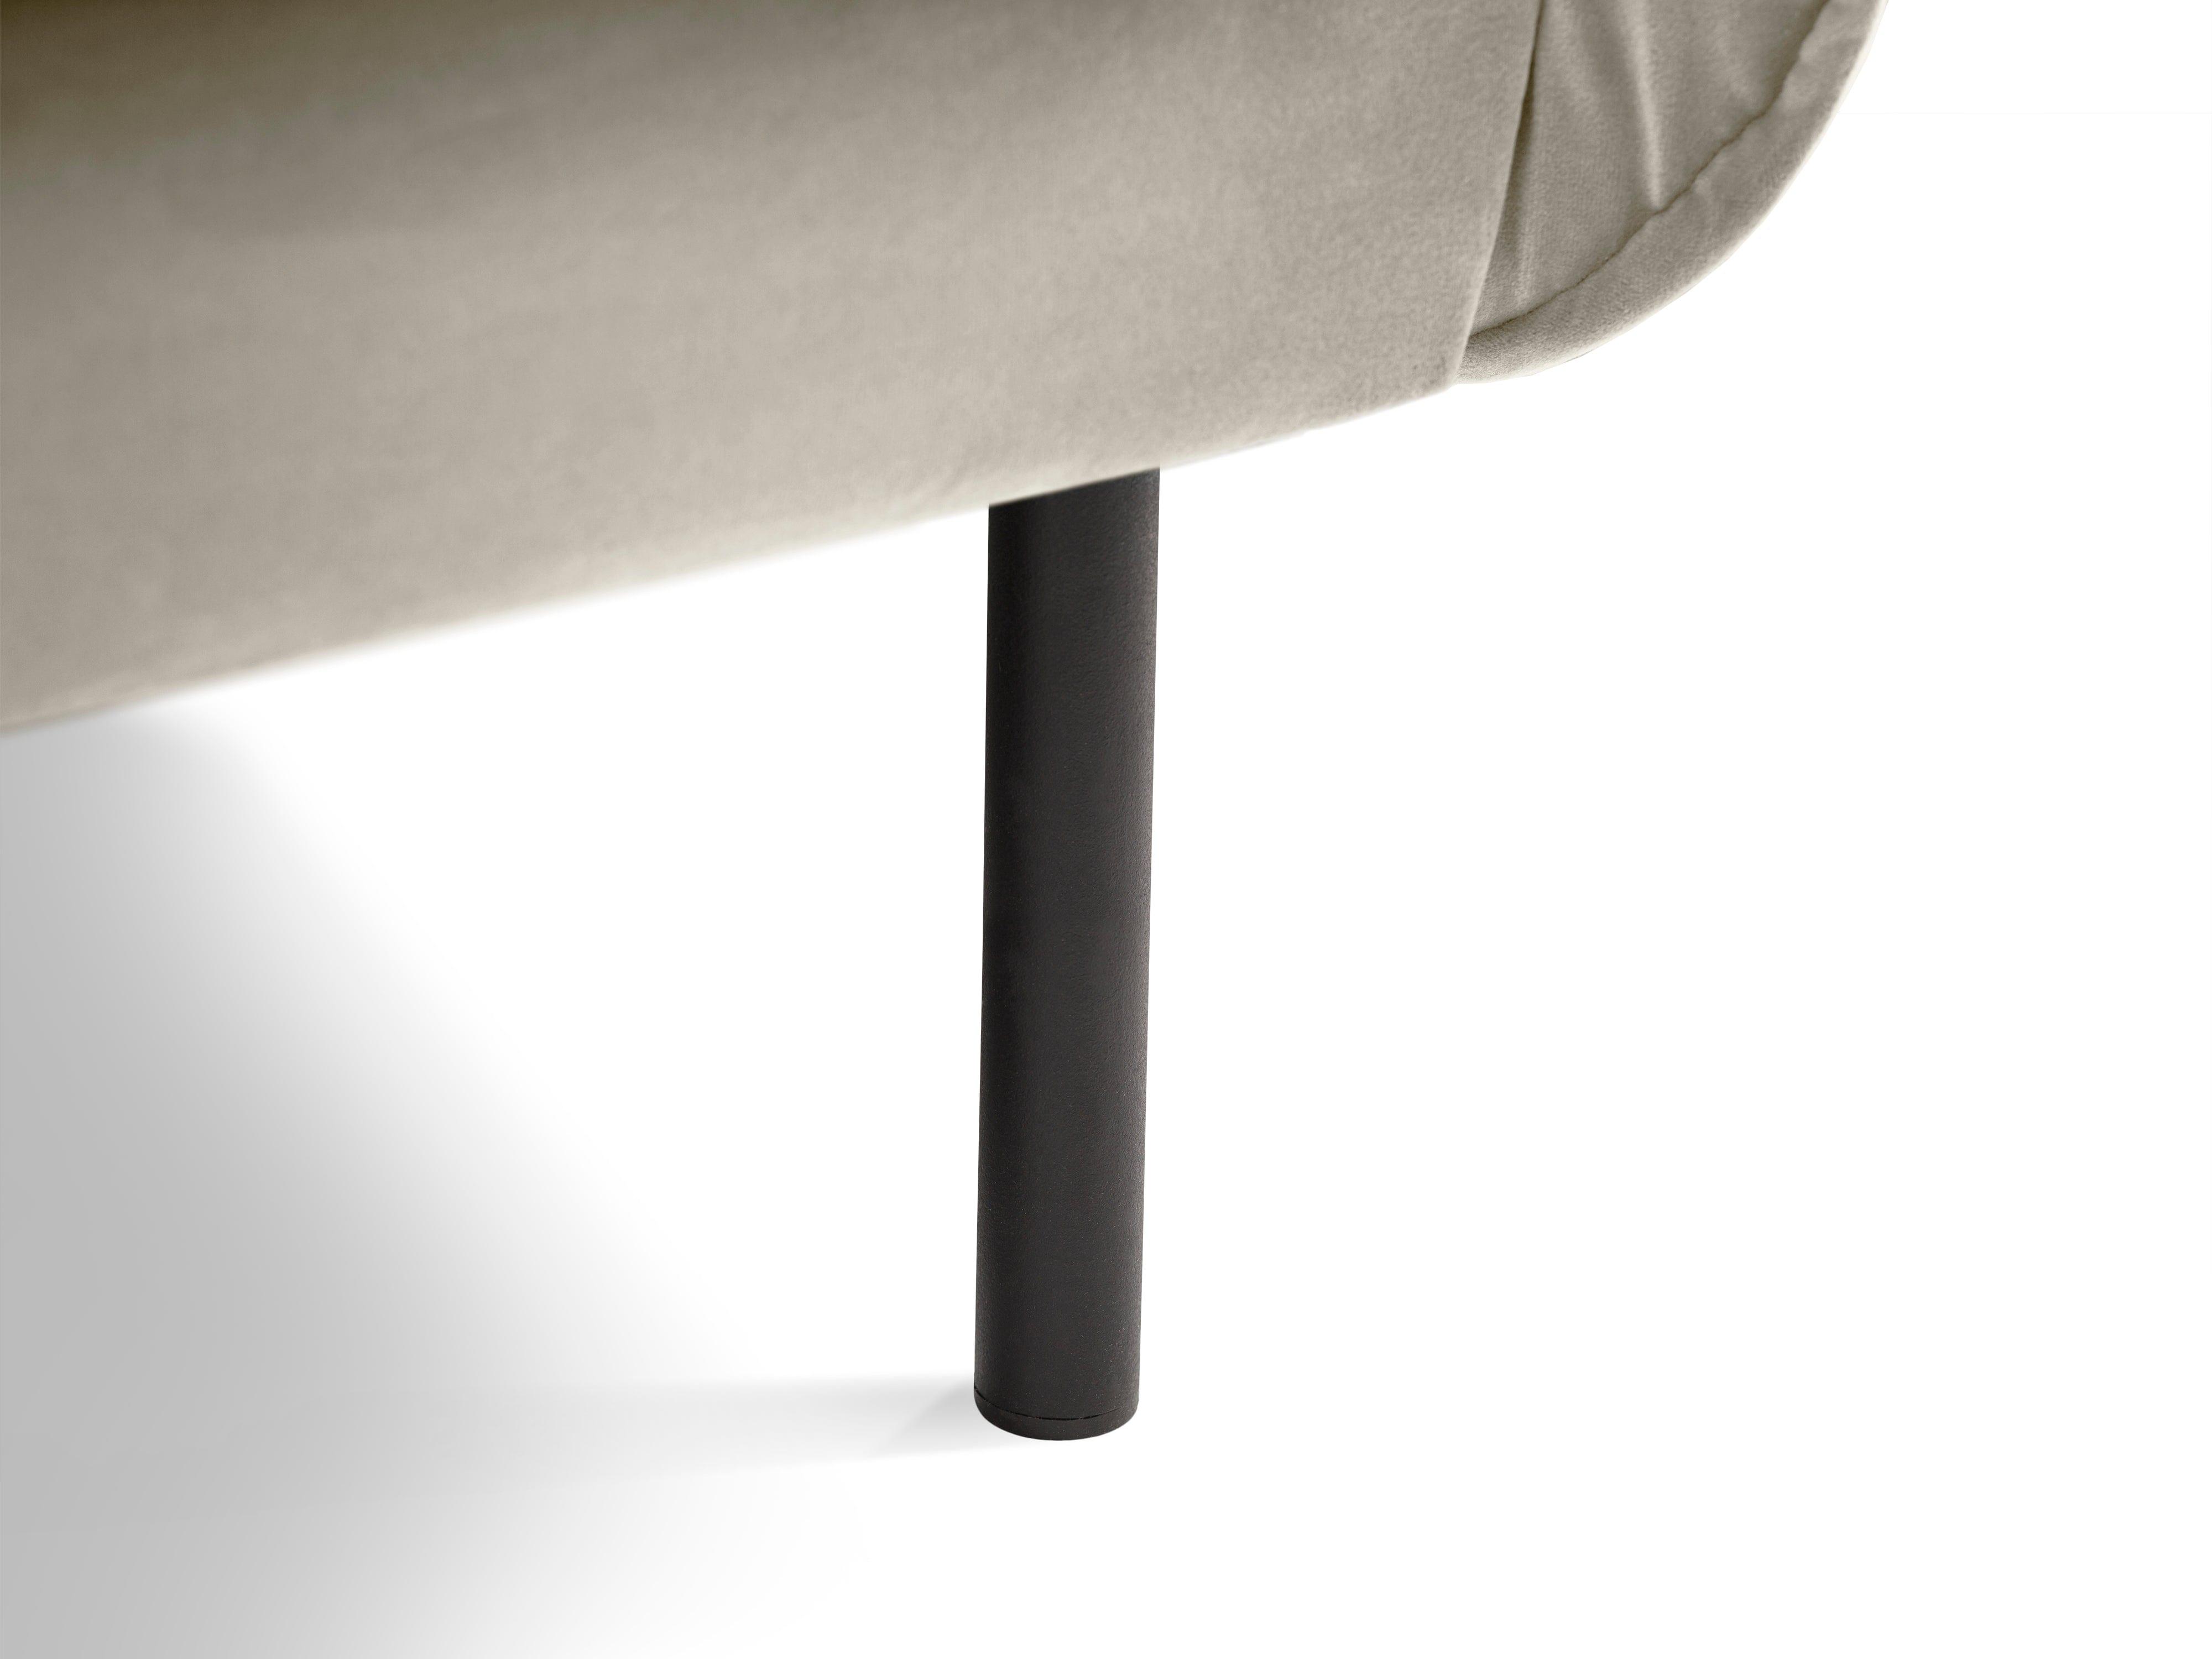 Sofa aksamitna 2-osobowa VIENNA beżowy z czarną podstawą Cosmopolitan Design    Eye on Design